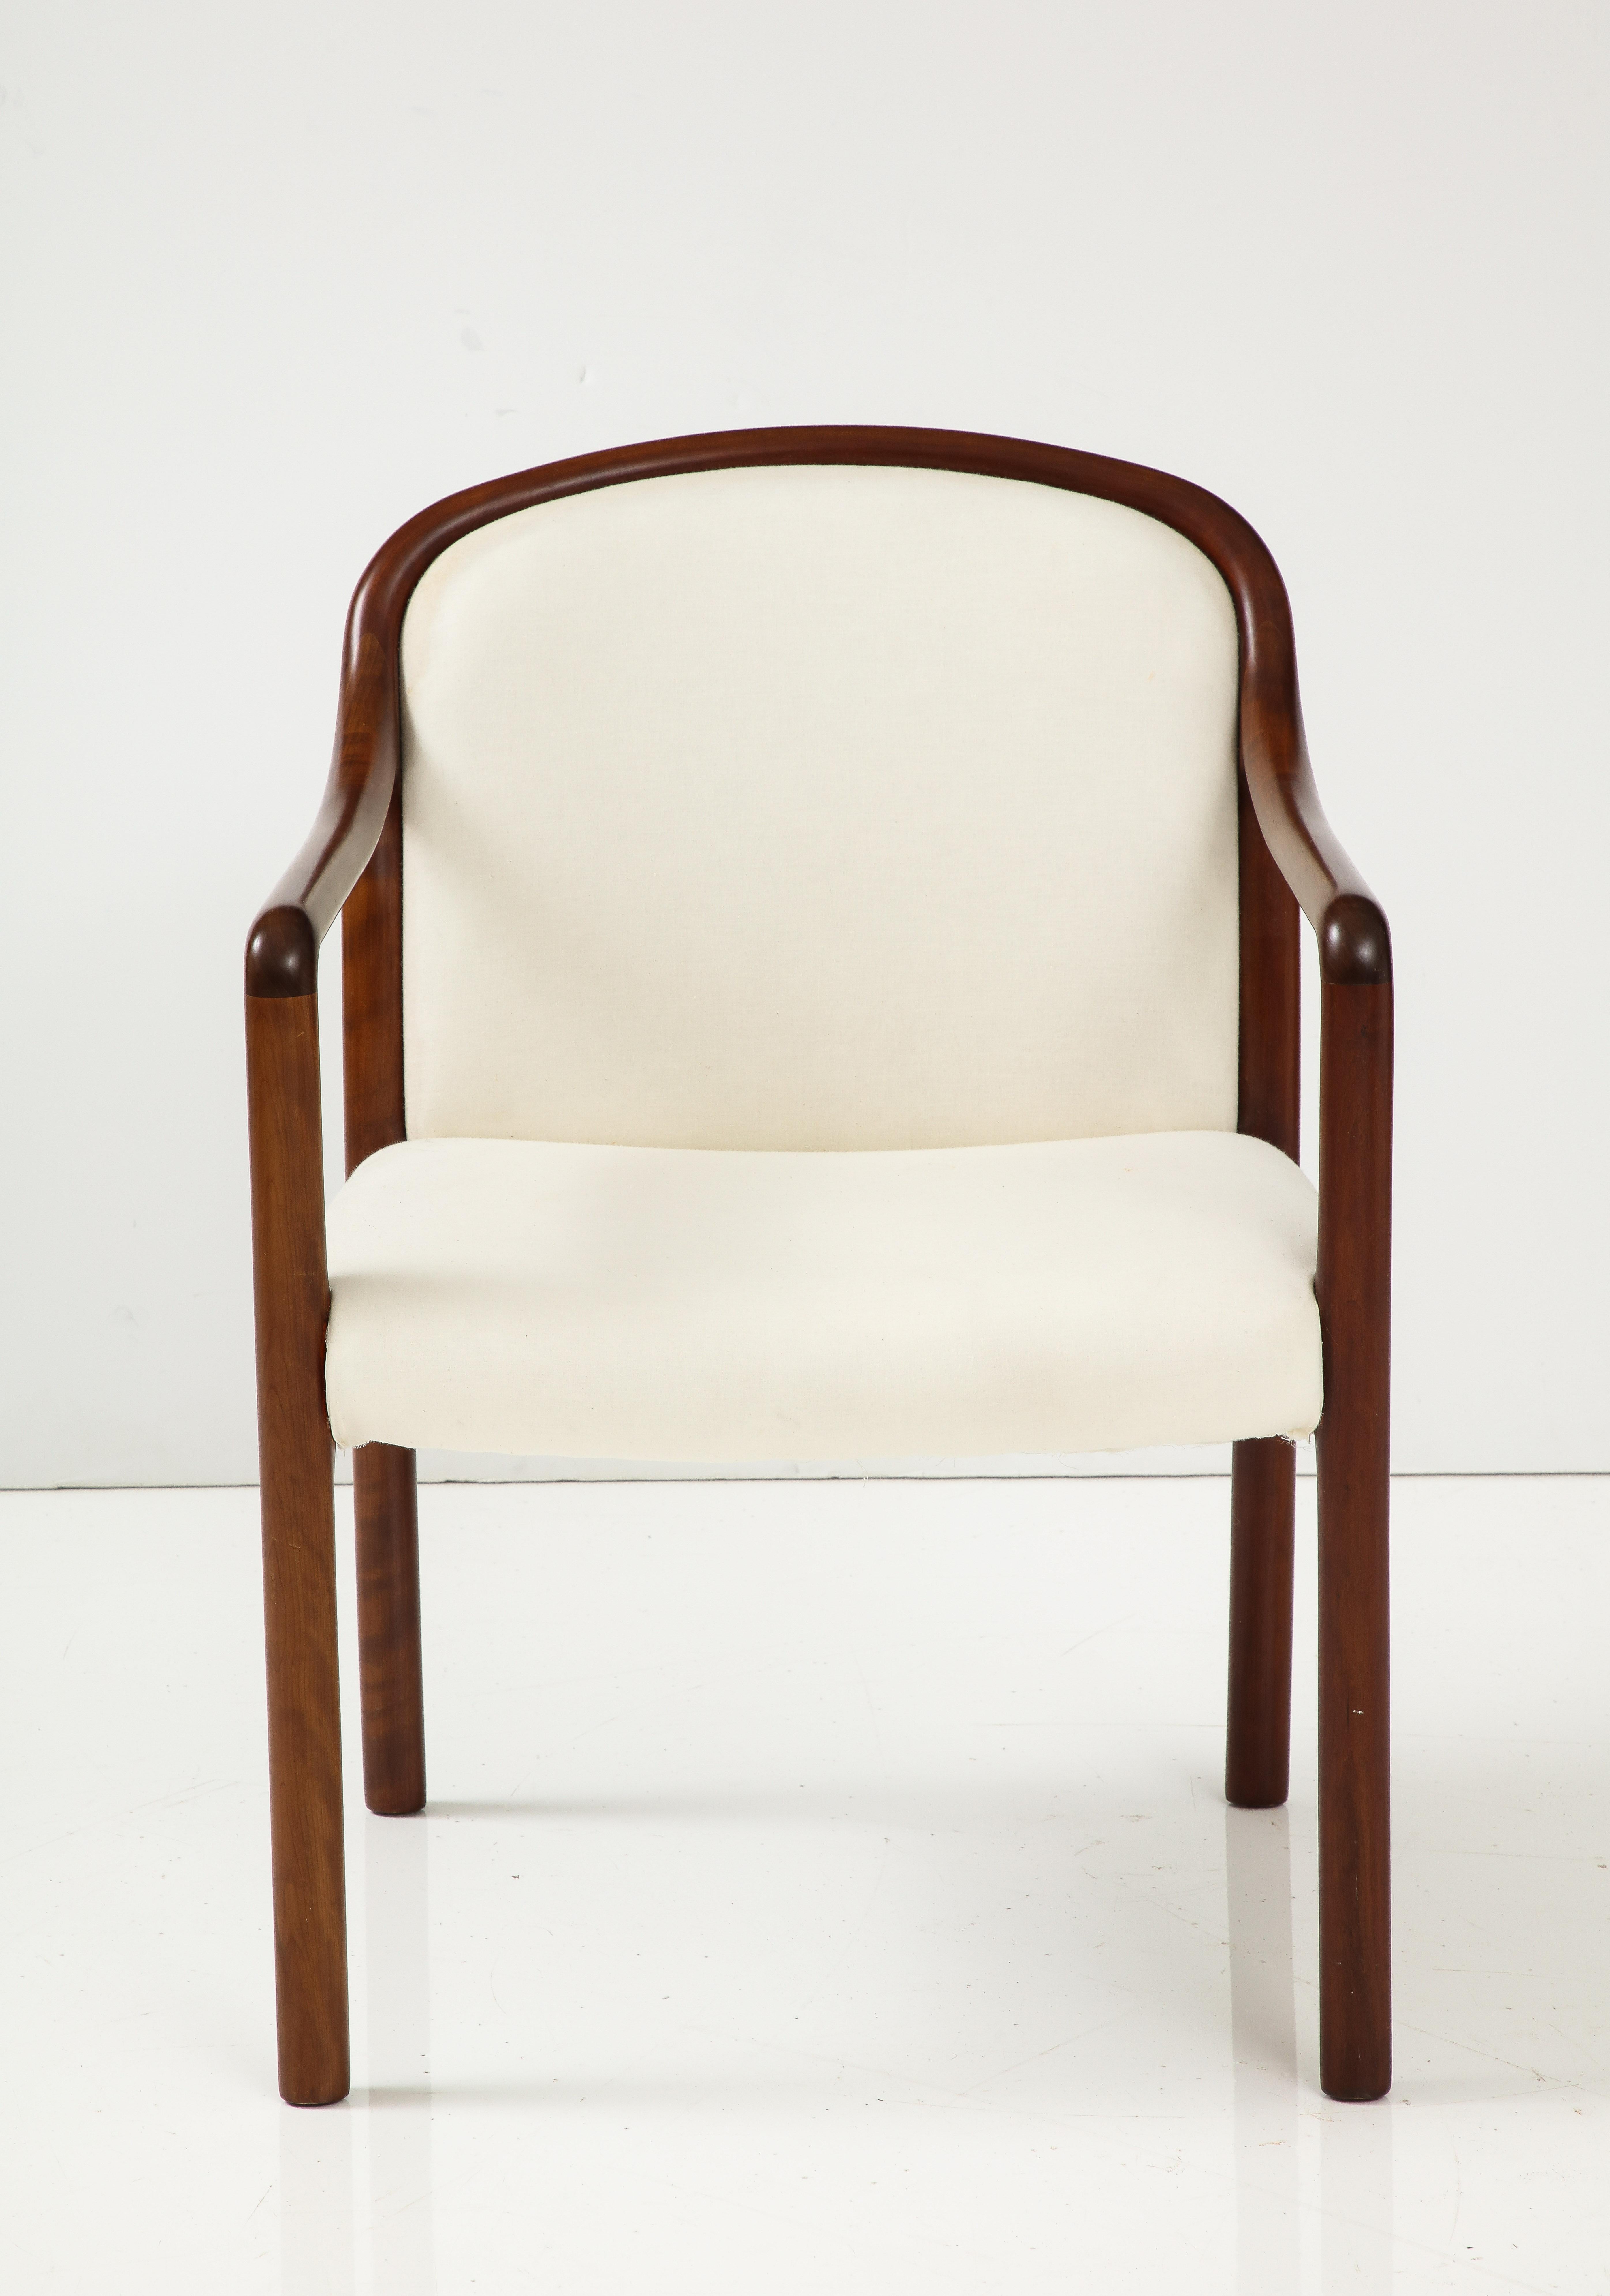 Fauteuil moderniste en Noyer avec un cadre sinueux à la finition huilée mate, tapissé de mousseline blanc cassé. Un complément idéal à tout bureau ou comme chaise d'appoint. La hauteur des bras est de 26 pouces à partir du sol.